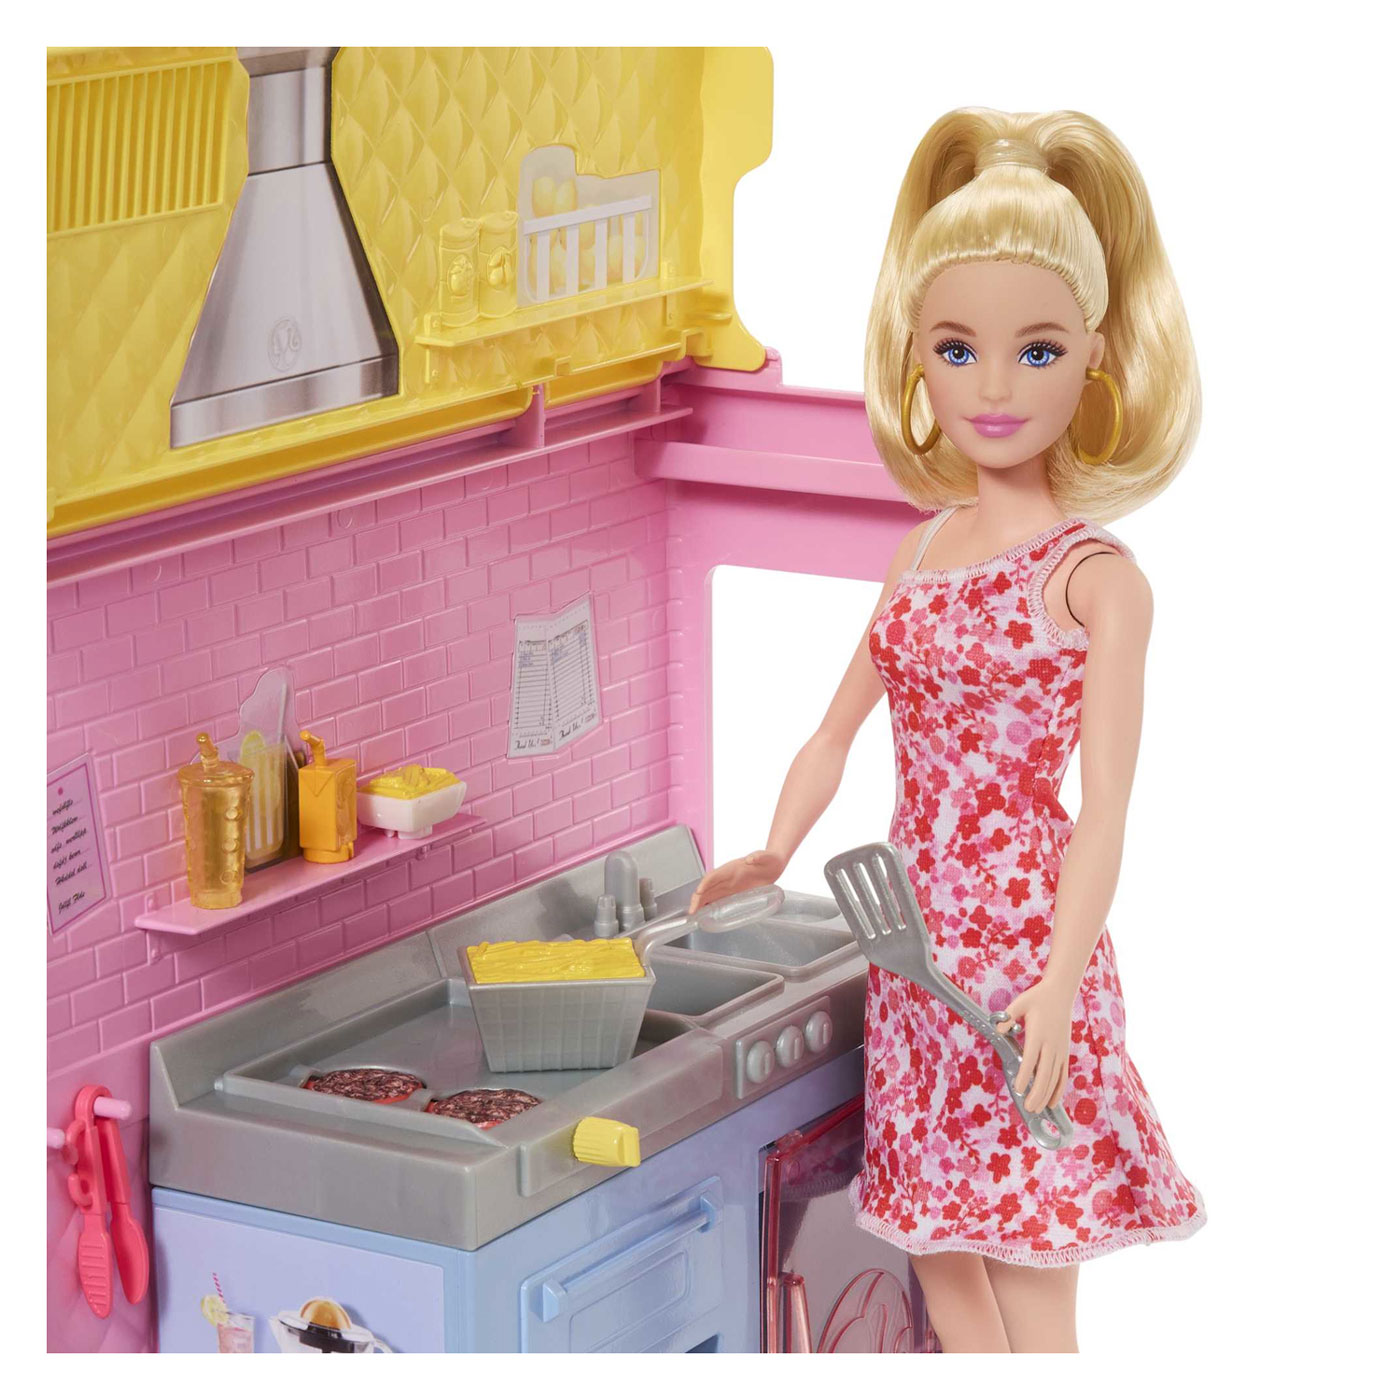 Chariot à limonade Barbie avec Pop